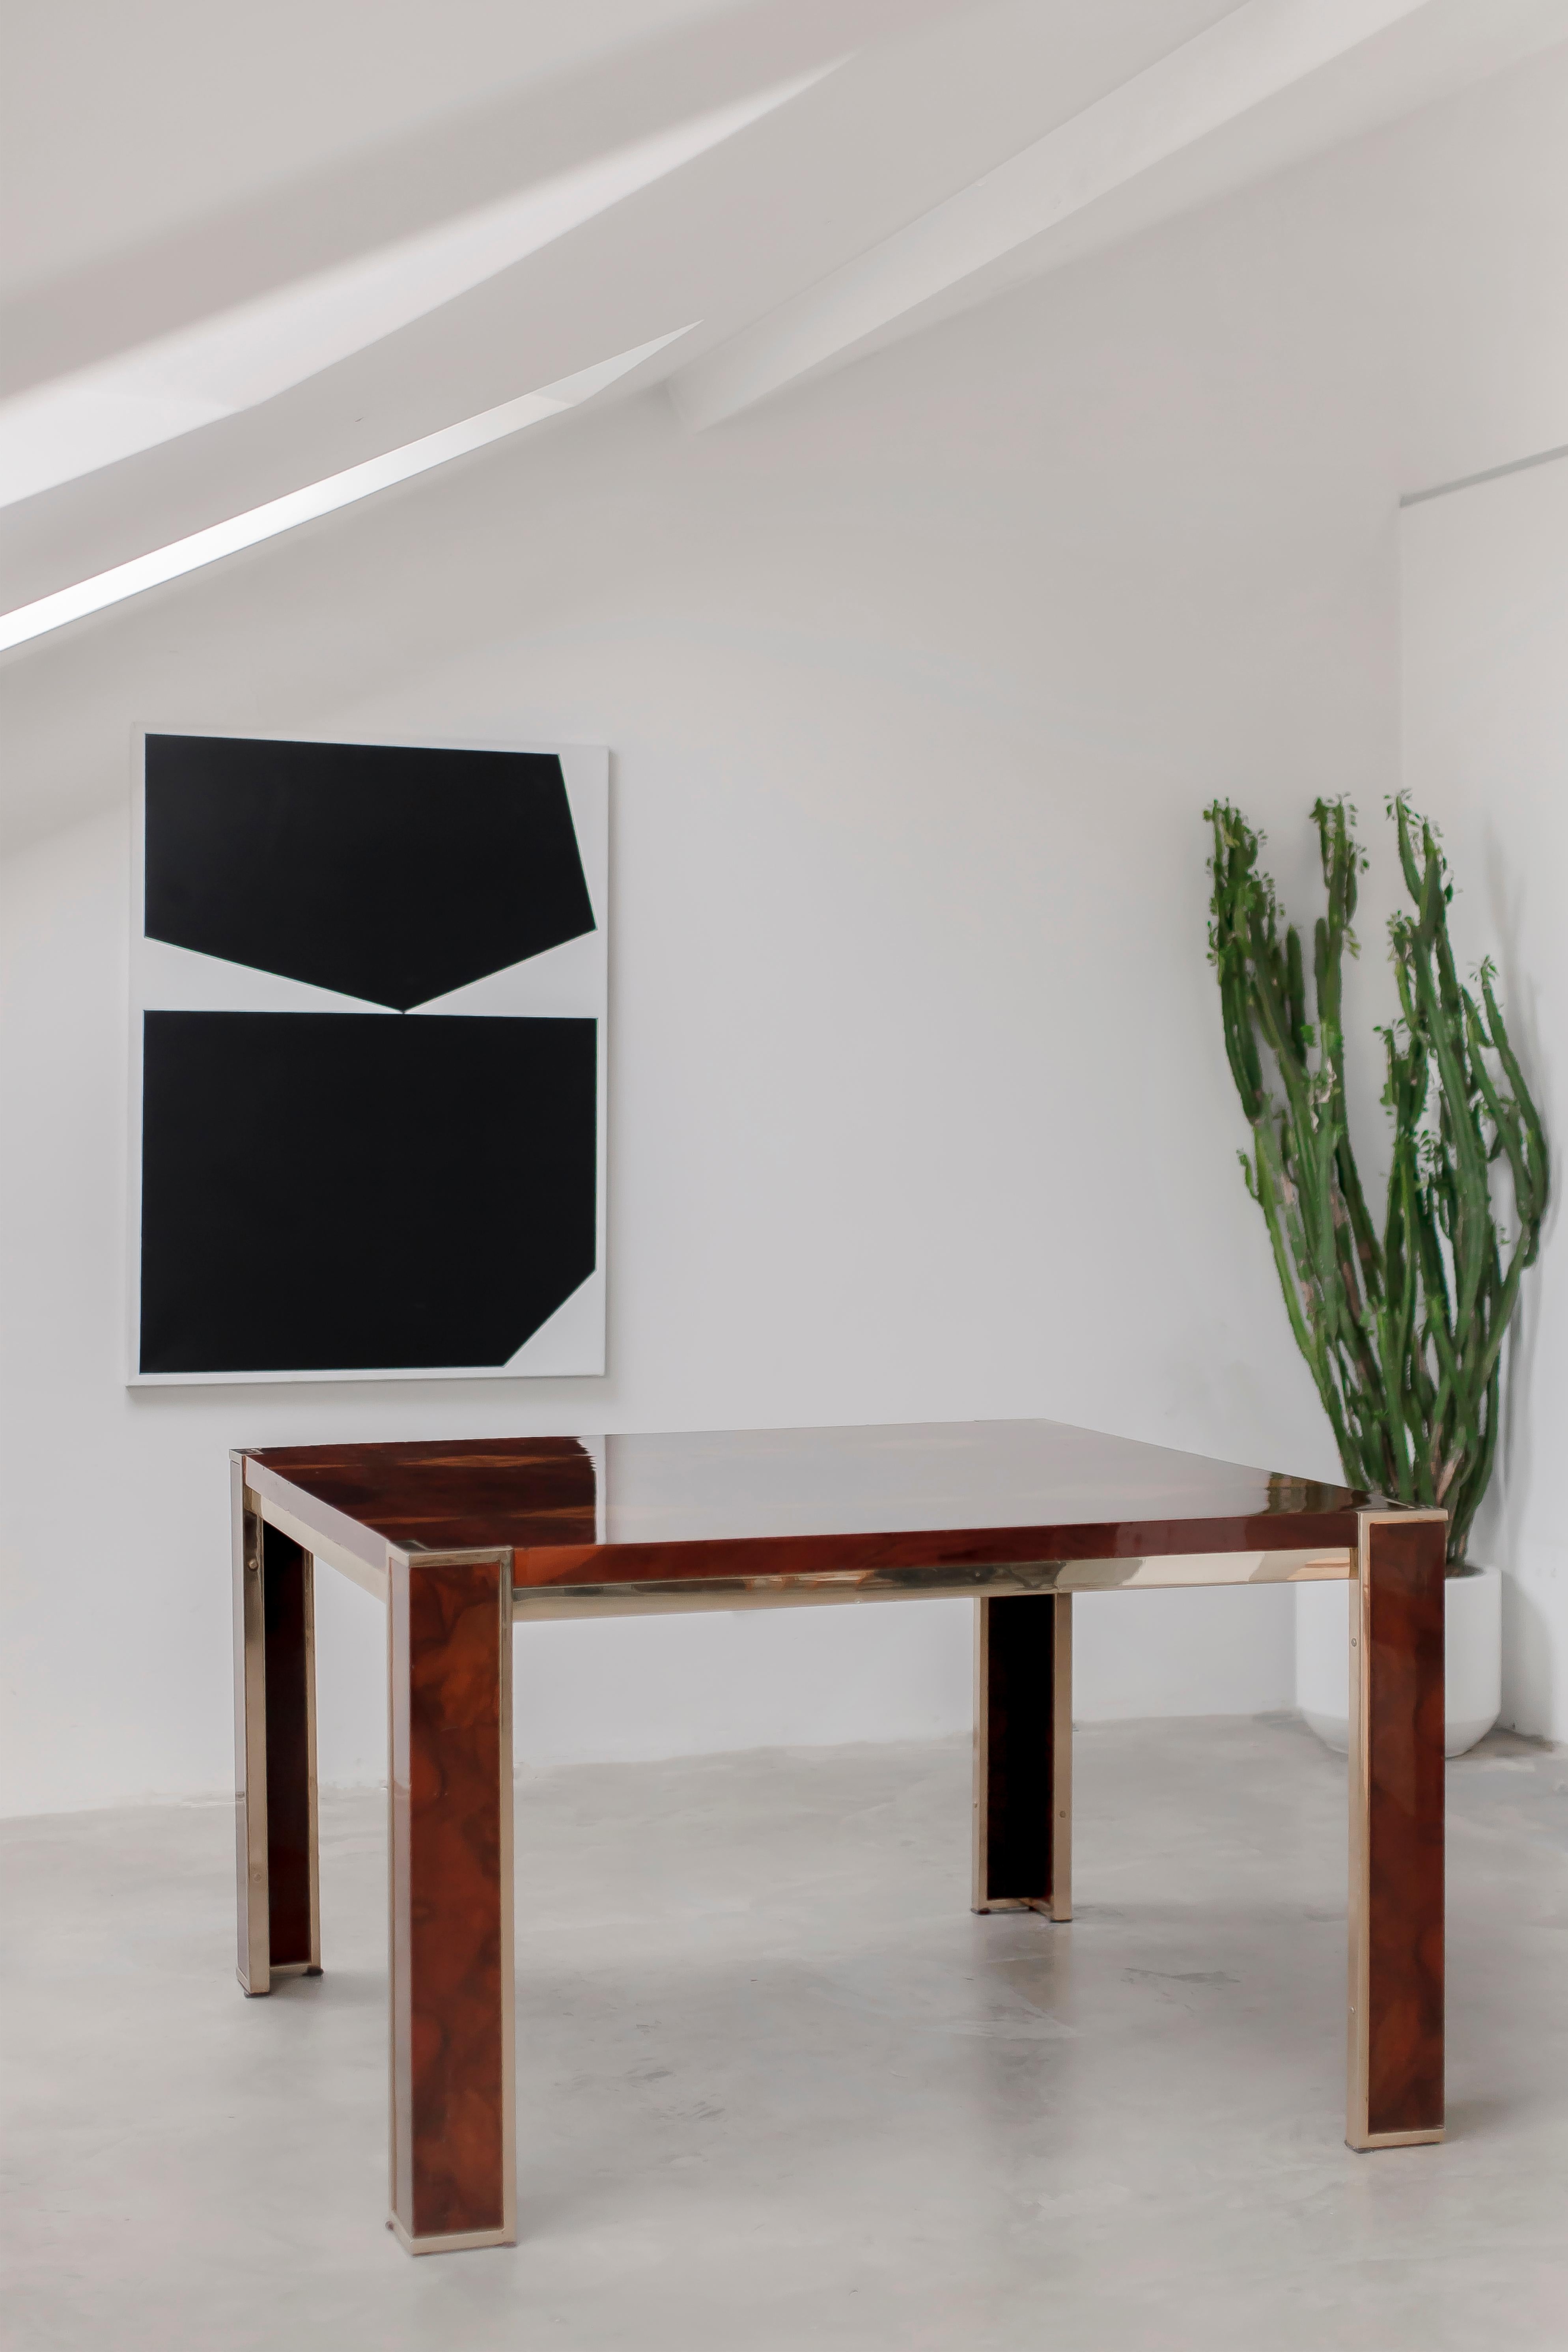 Pièce de design moderne minimaliste datant de la fin des années 1970.
Nous ne savons pas si la table est conçue ou si elle est dans le style de Willy Rizzo. 
Il présente toutes les caractéristiques communes au designer mentionné.
Des éléments en